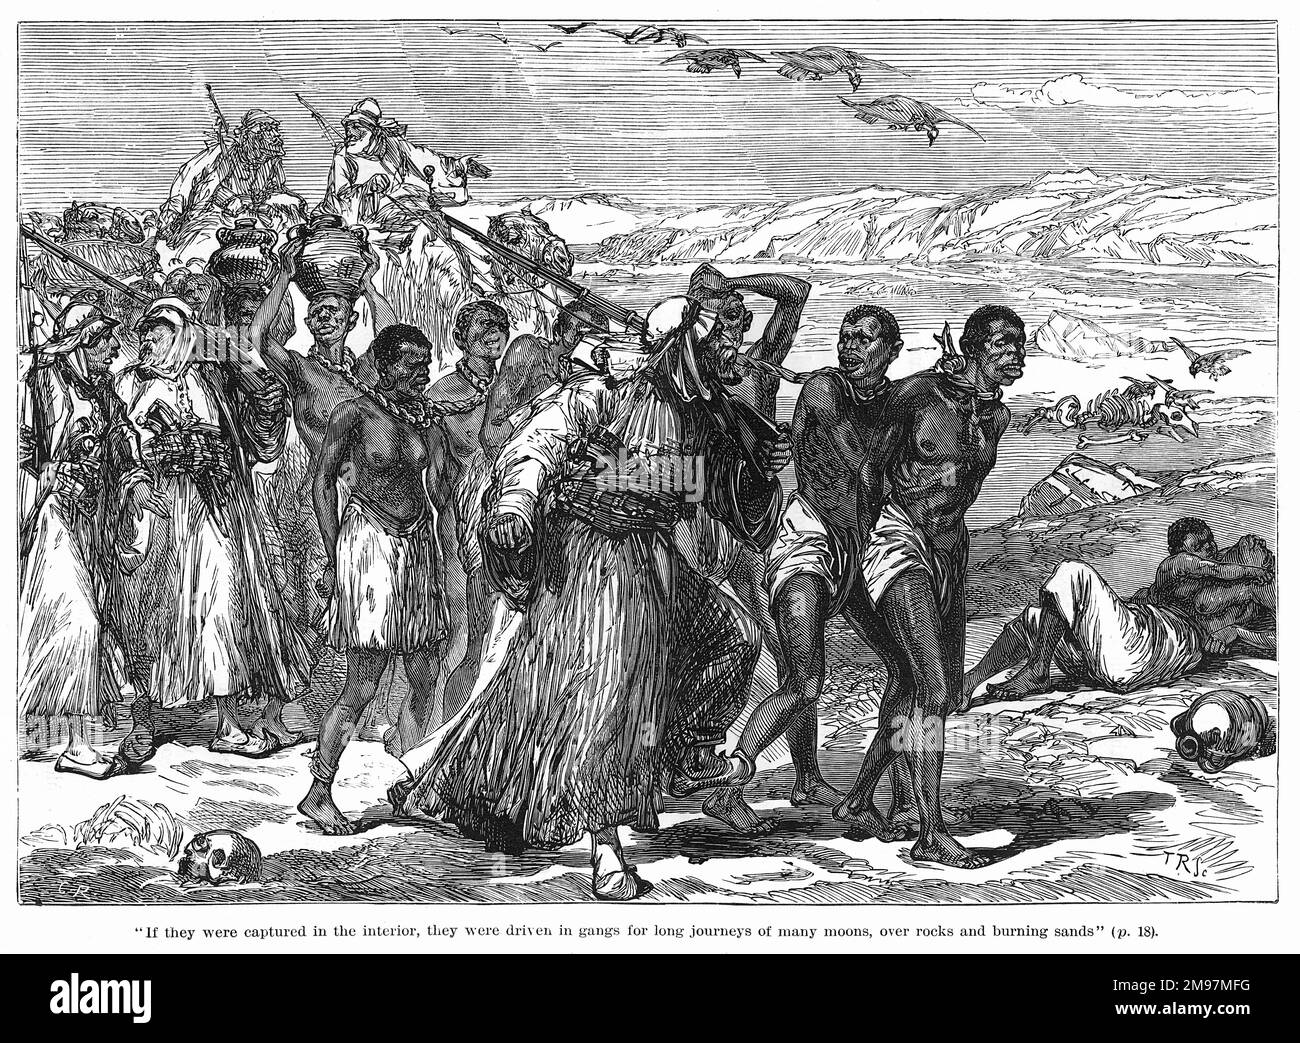 Gefangennahme von Afrikanern für die Sklaverei -- wenn sie im Inneren gefangen wurden, wurden sie gefesselt und in Banden für lange Reisen über Felsen und brennenden Sand zur Küste gefahren. Stockfoto